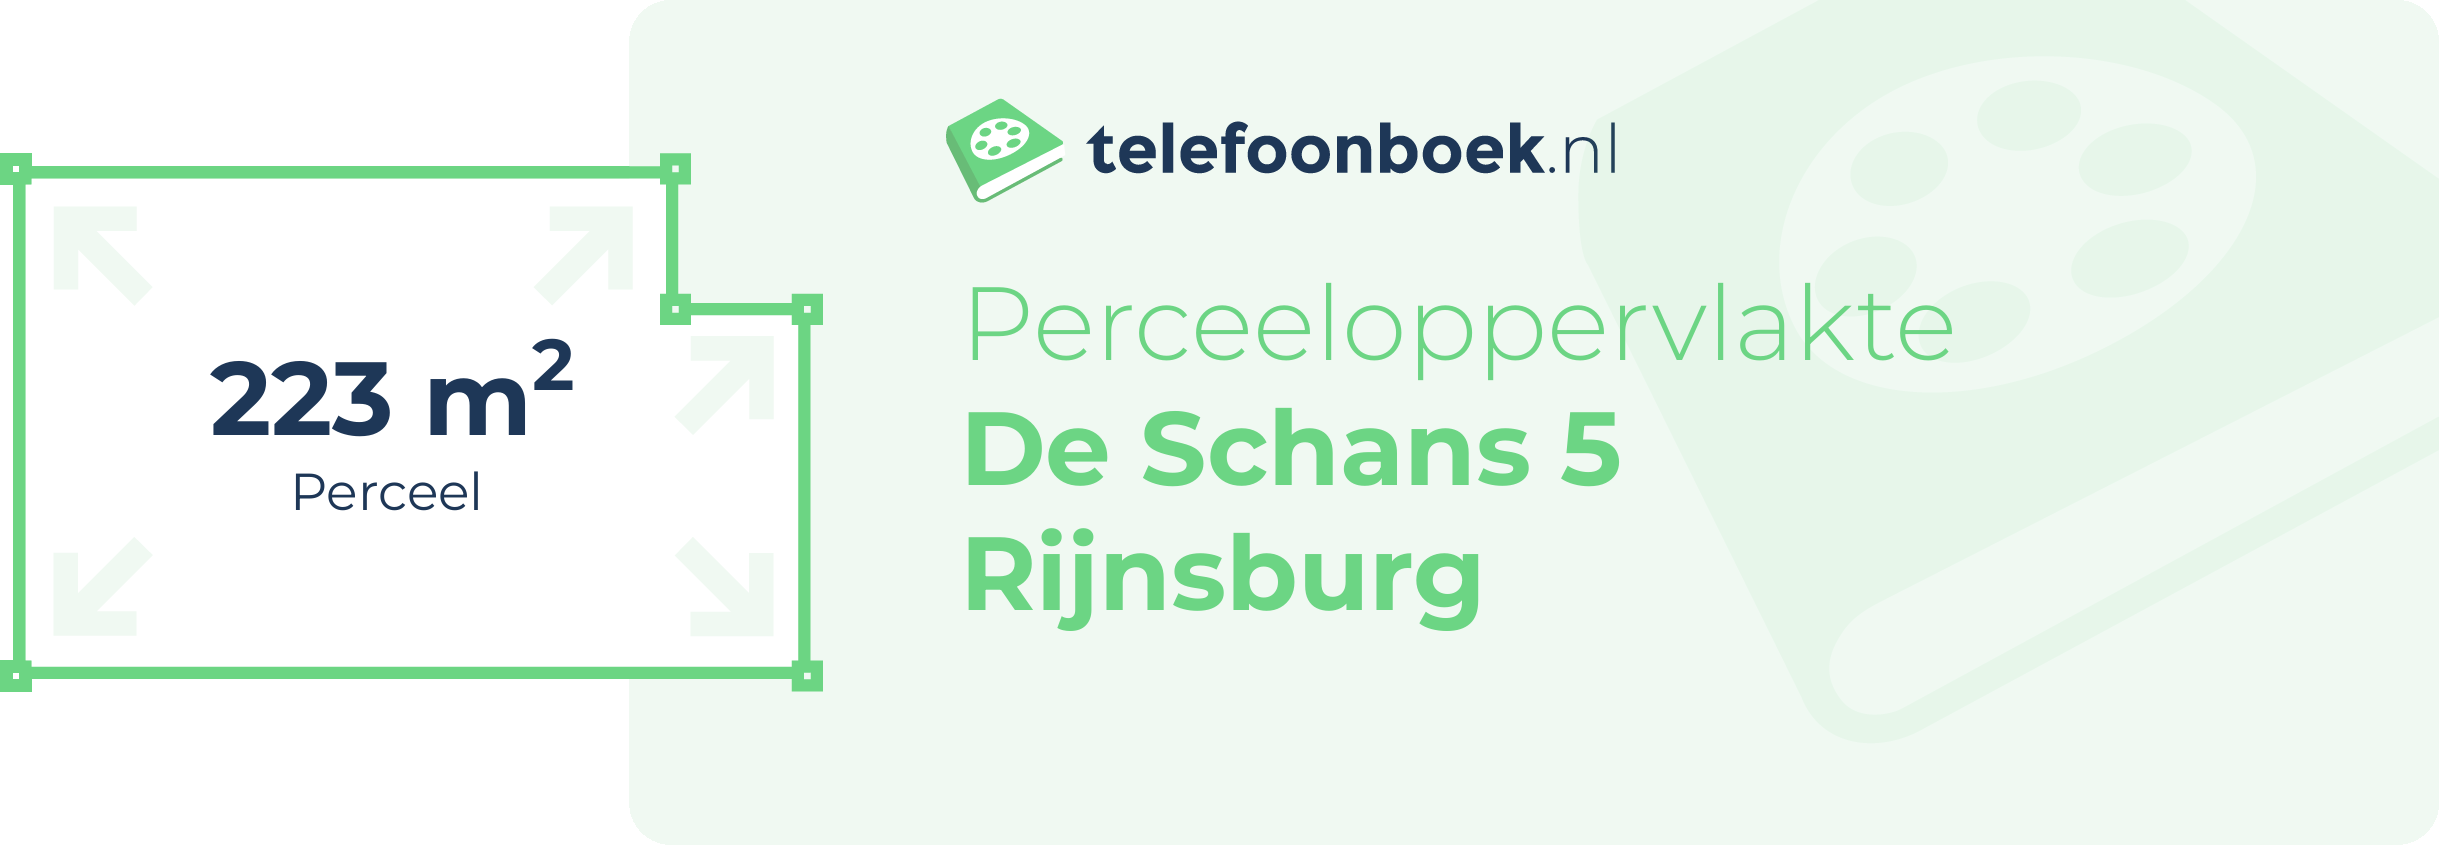 Perceeloppervlakte De Schans 5 Rijnsburg